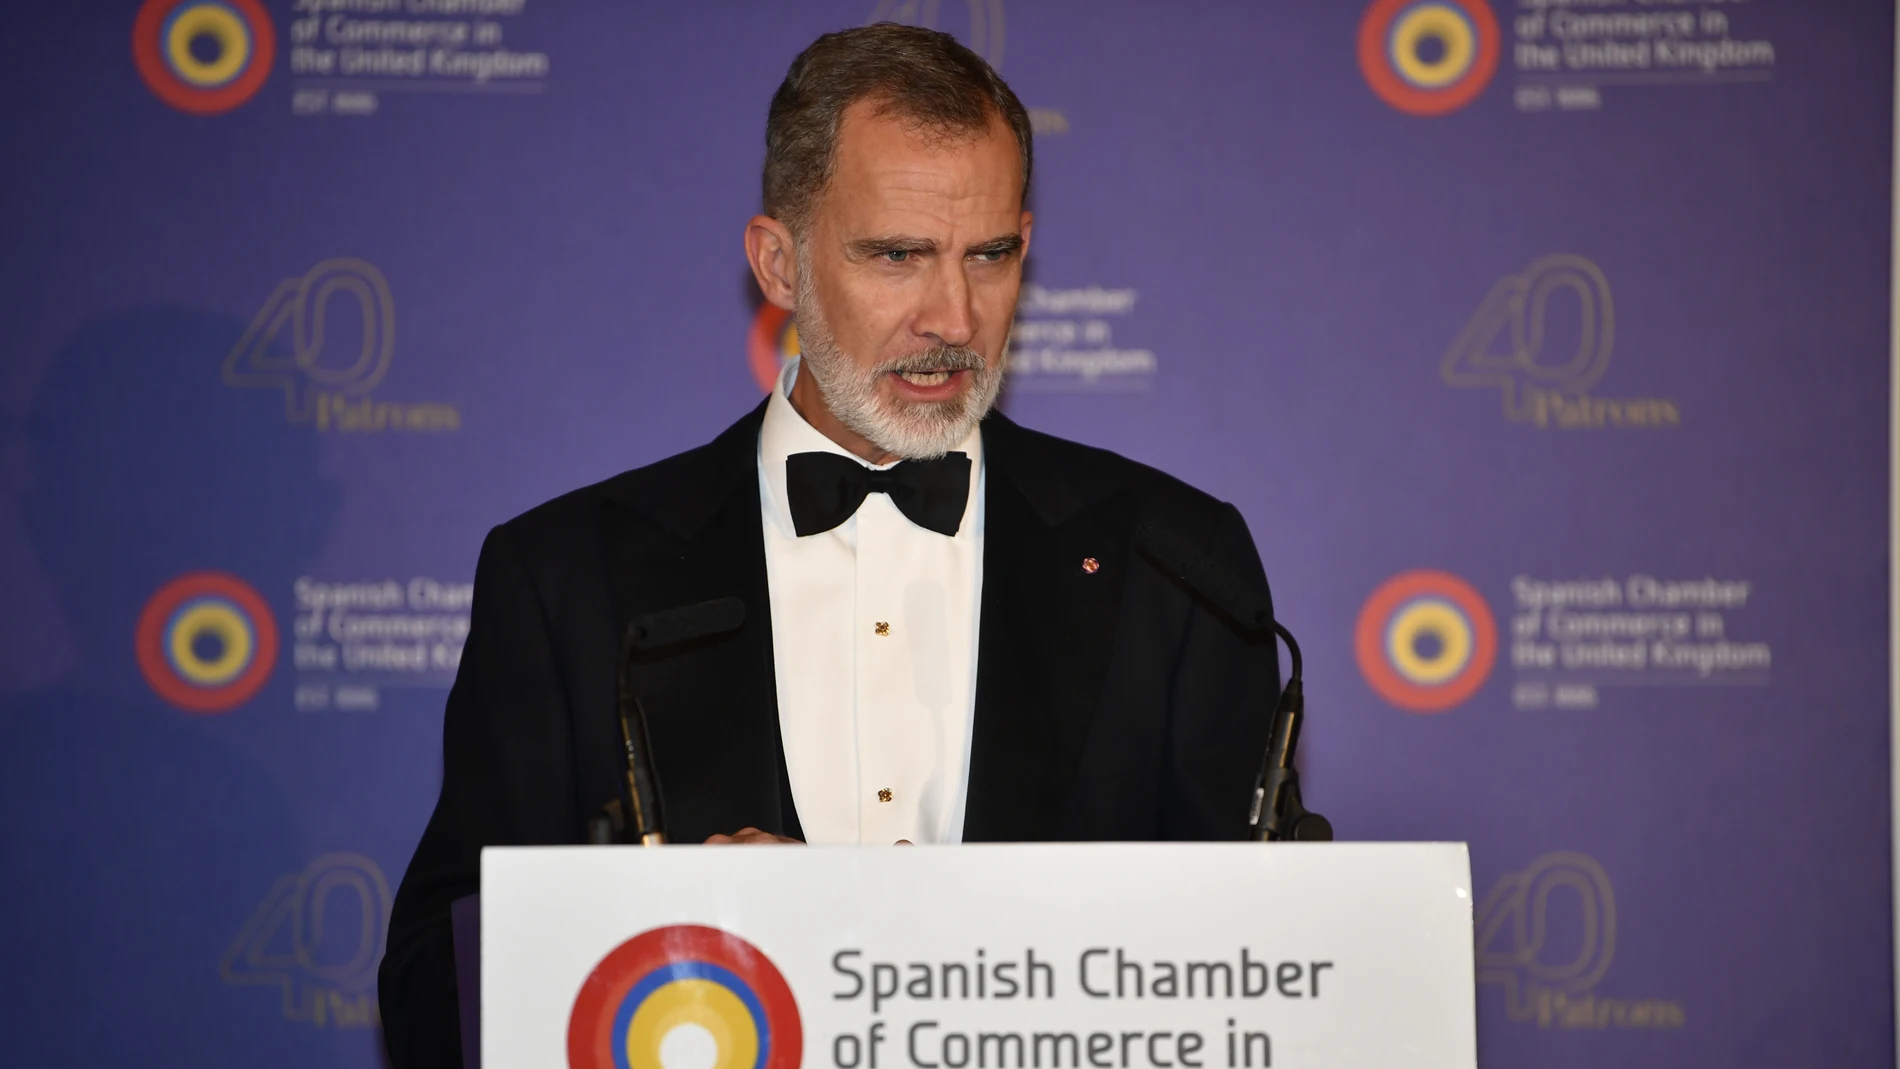 El rey Felipe VI, durante la gala por el 135 aniversario de la Cámara de Comercio de España en Reino Unido, este lunes 21 de noviembre en Londres